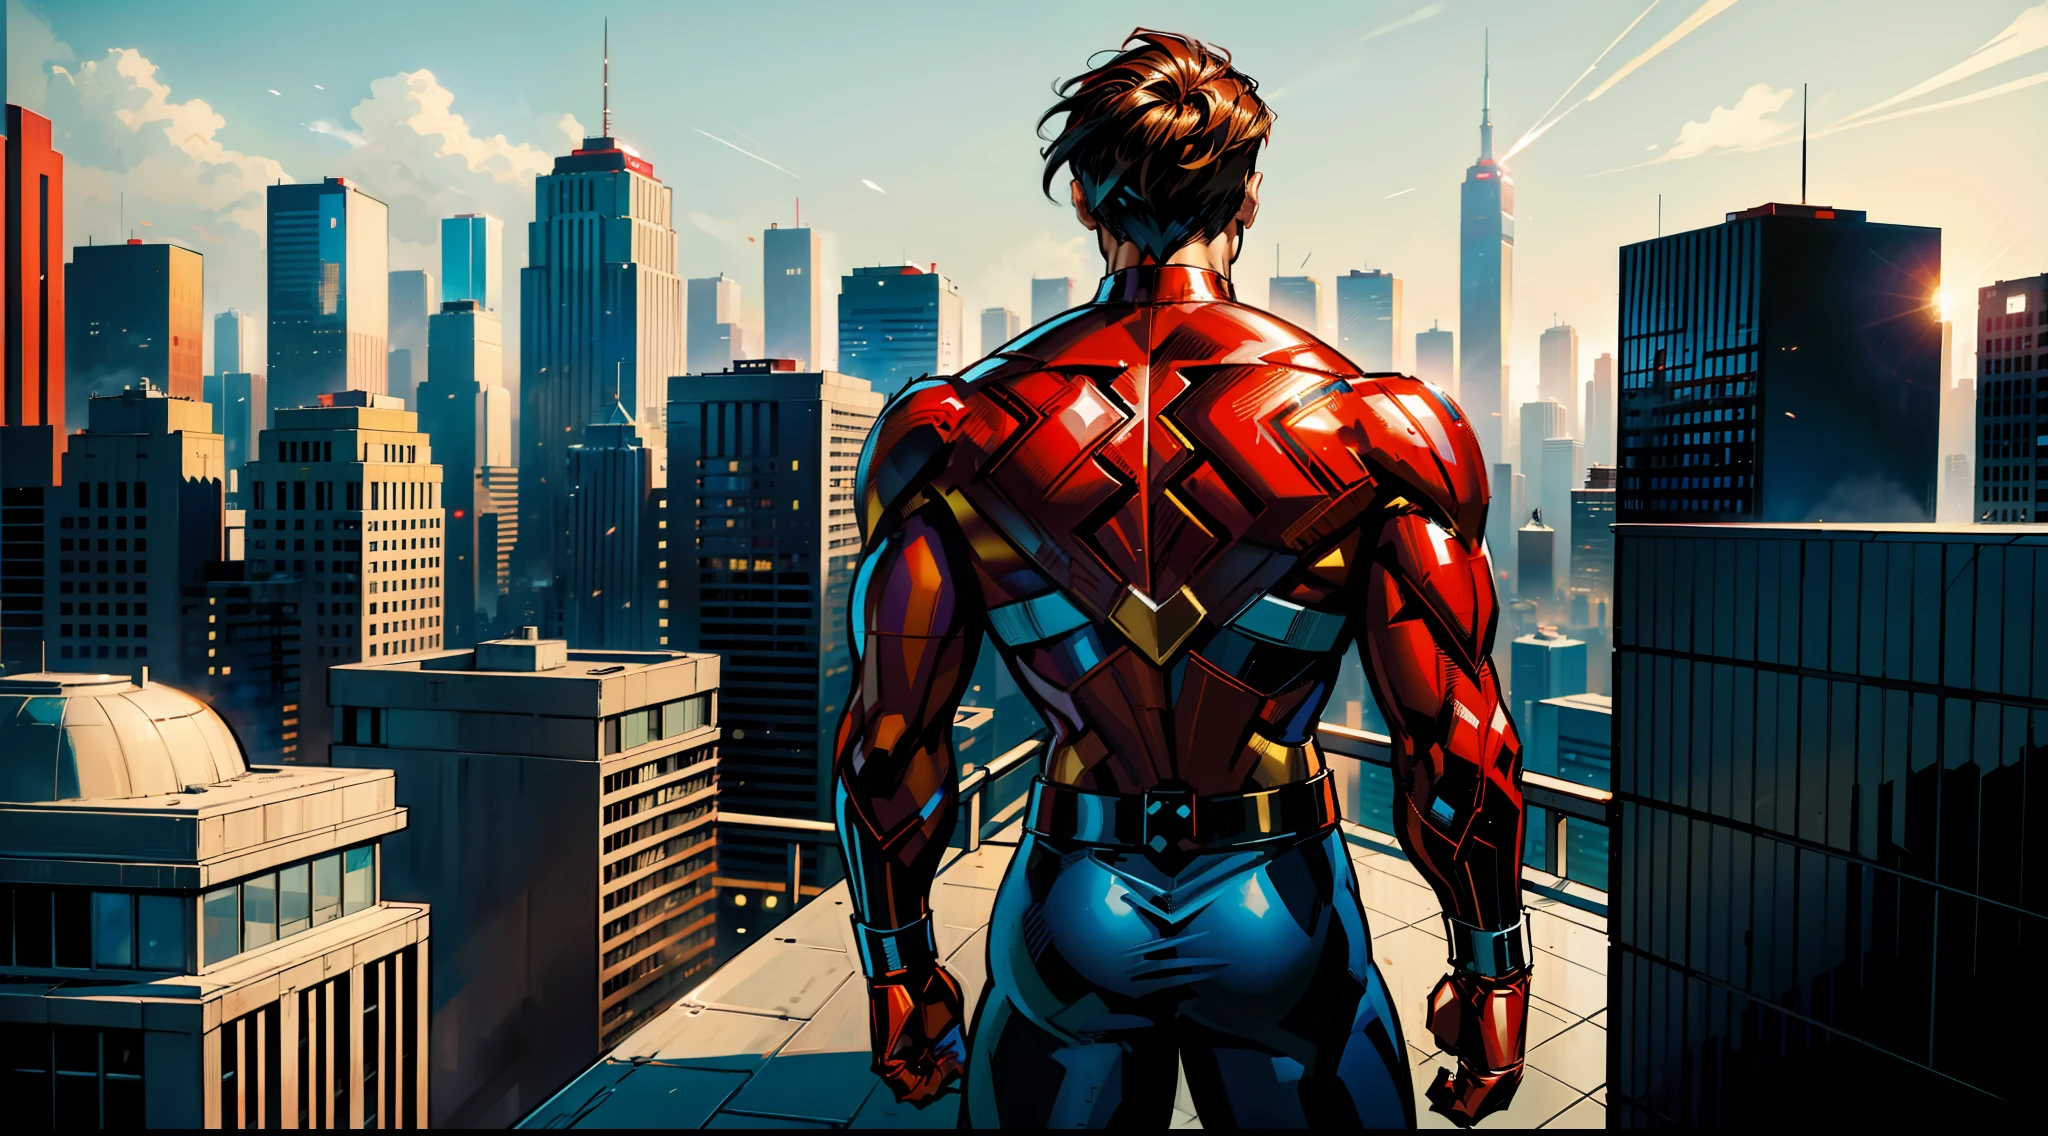 Мужчина, Супергерой, одет в красно-белый костюм супергероя, минимум золотых деталей в его костюме, видно со спины, на вершине здания, глядя на современный город как на фон, Стэн Ли, Джим Ли, Джо Беннет, стиль комиксов, modern стиль комиксов.